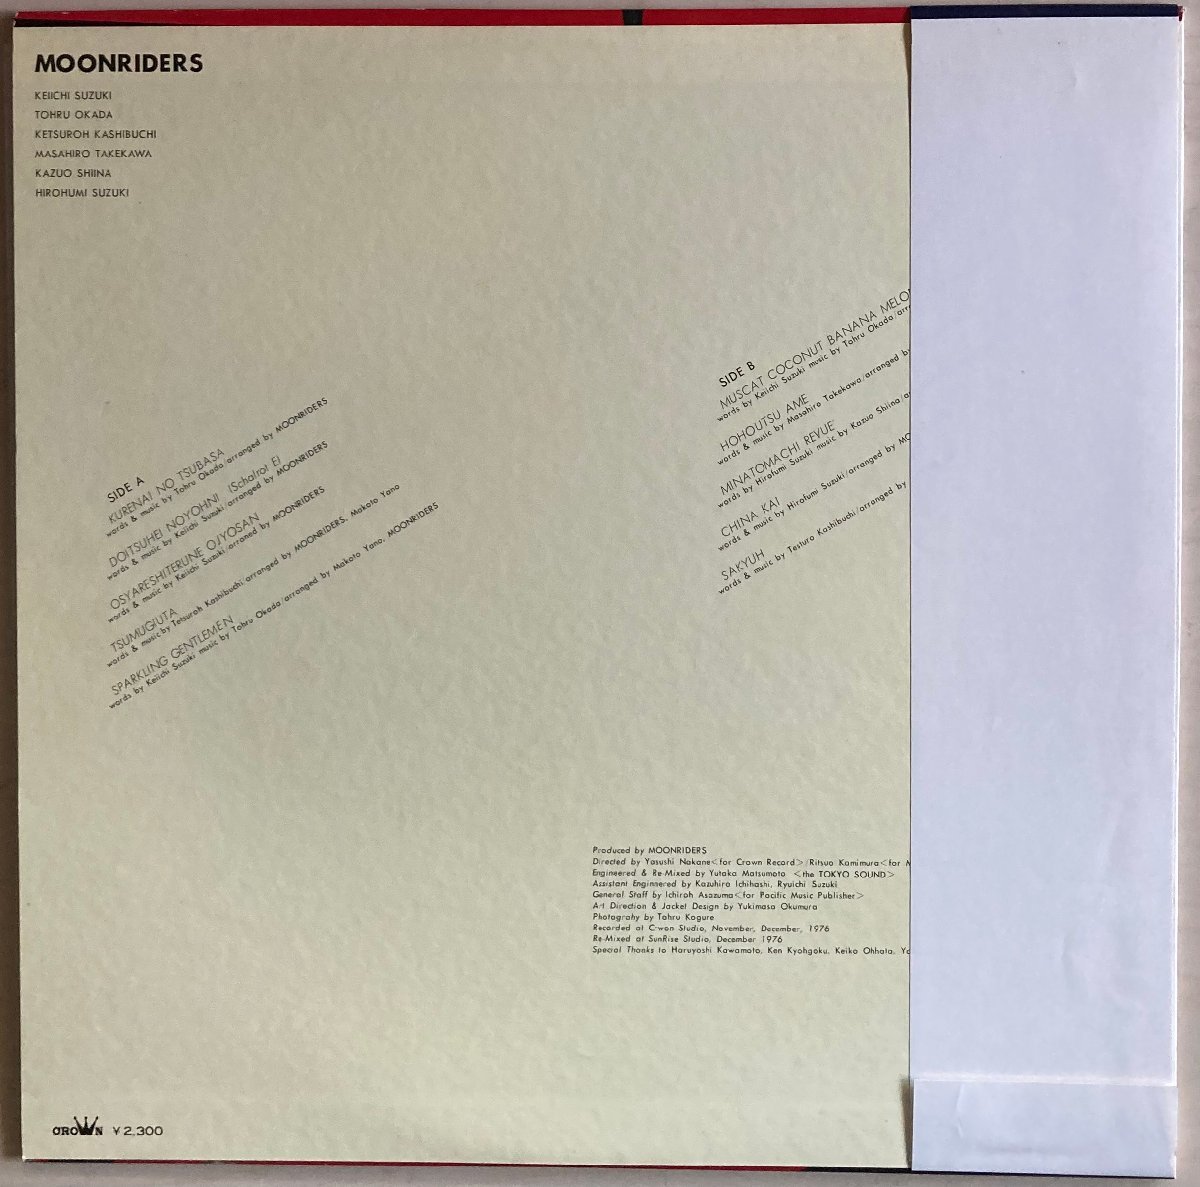 LPA20585 ムーンライダース / MOON RIDERS 国内盤LP 盤良好_画像2